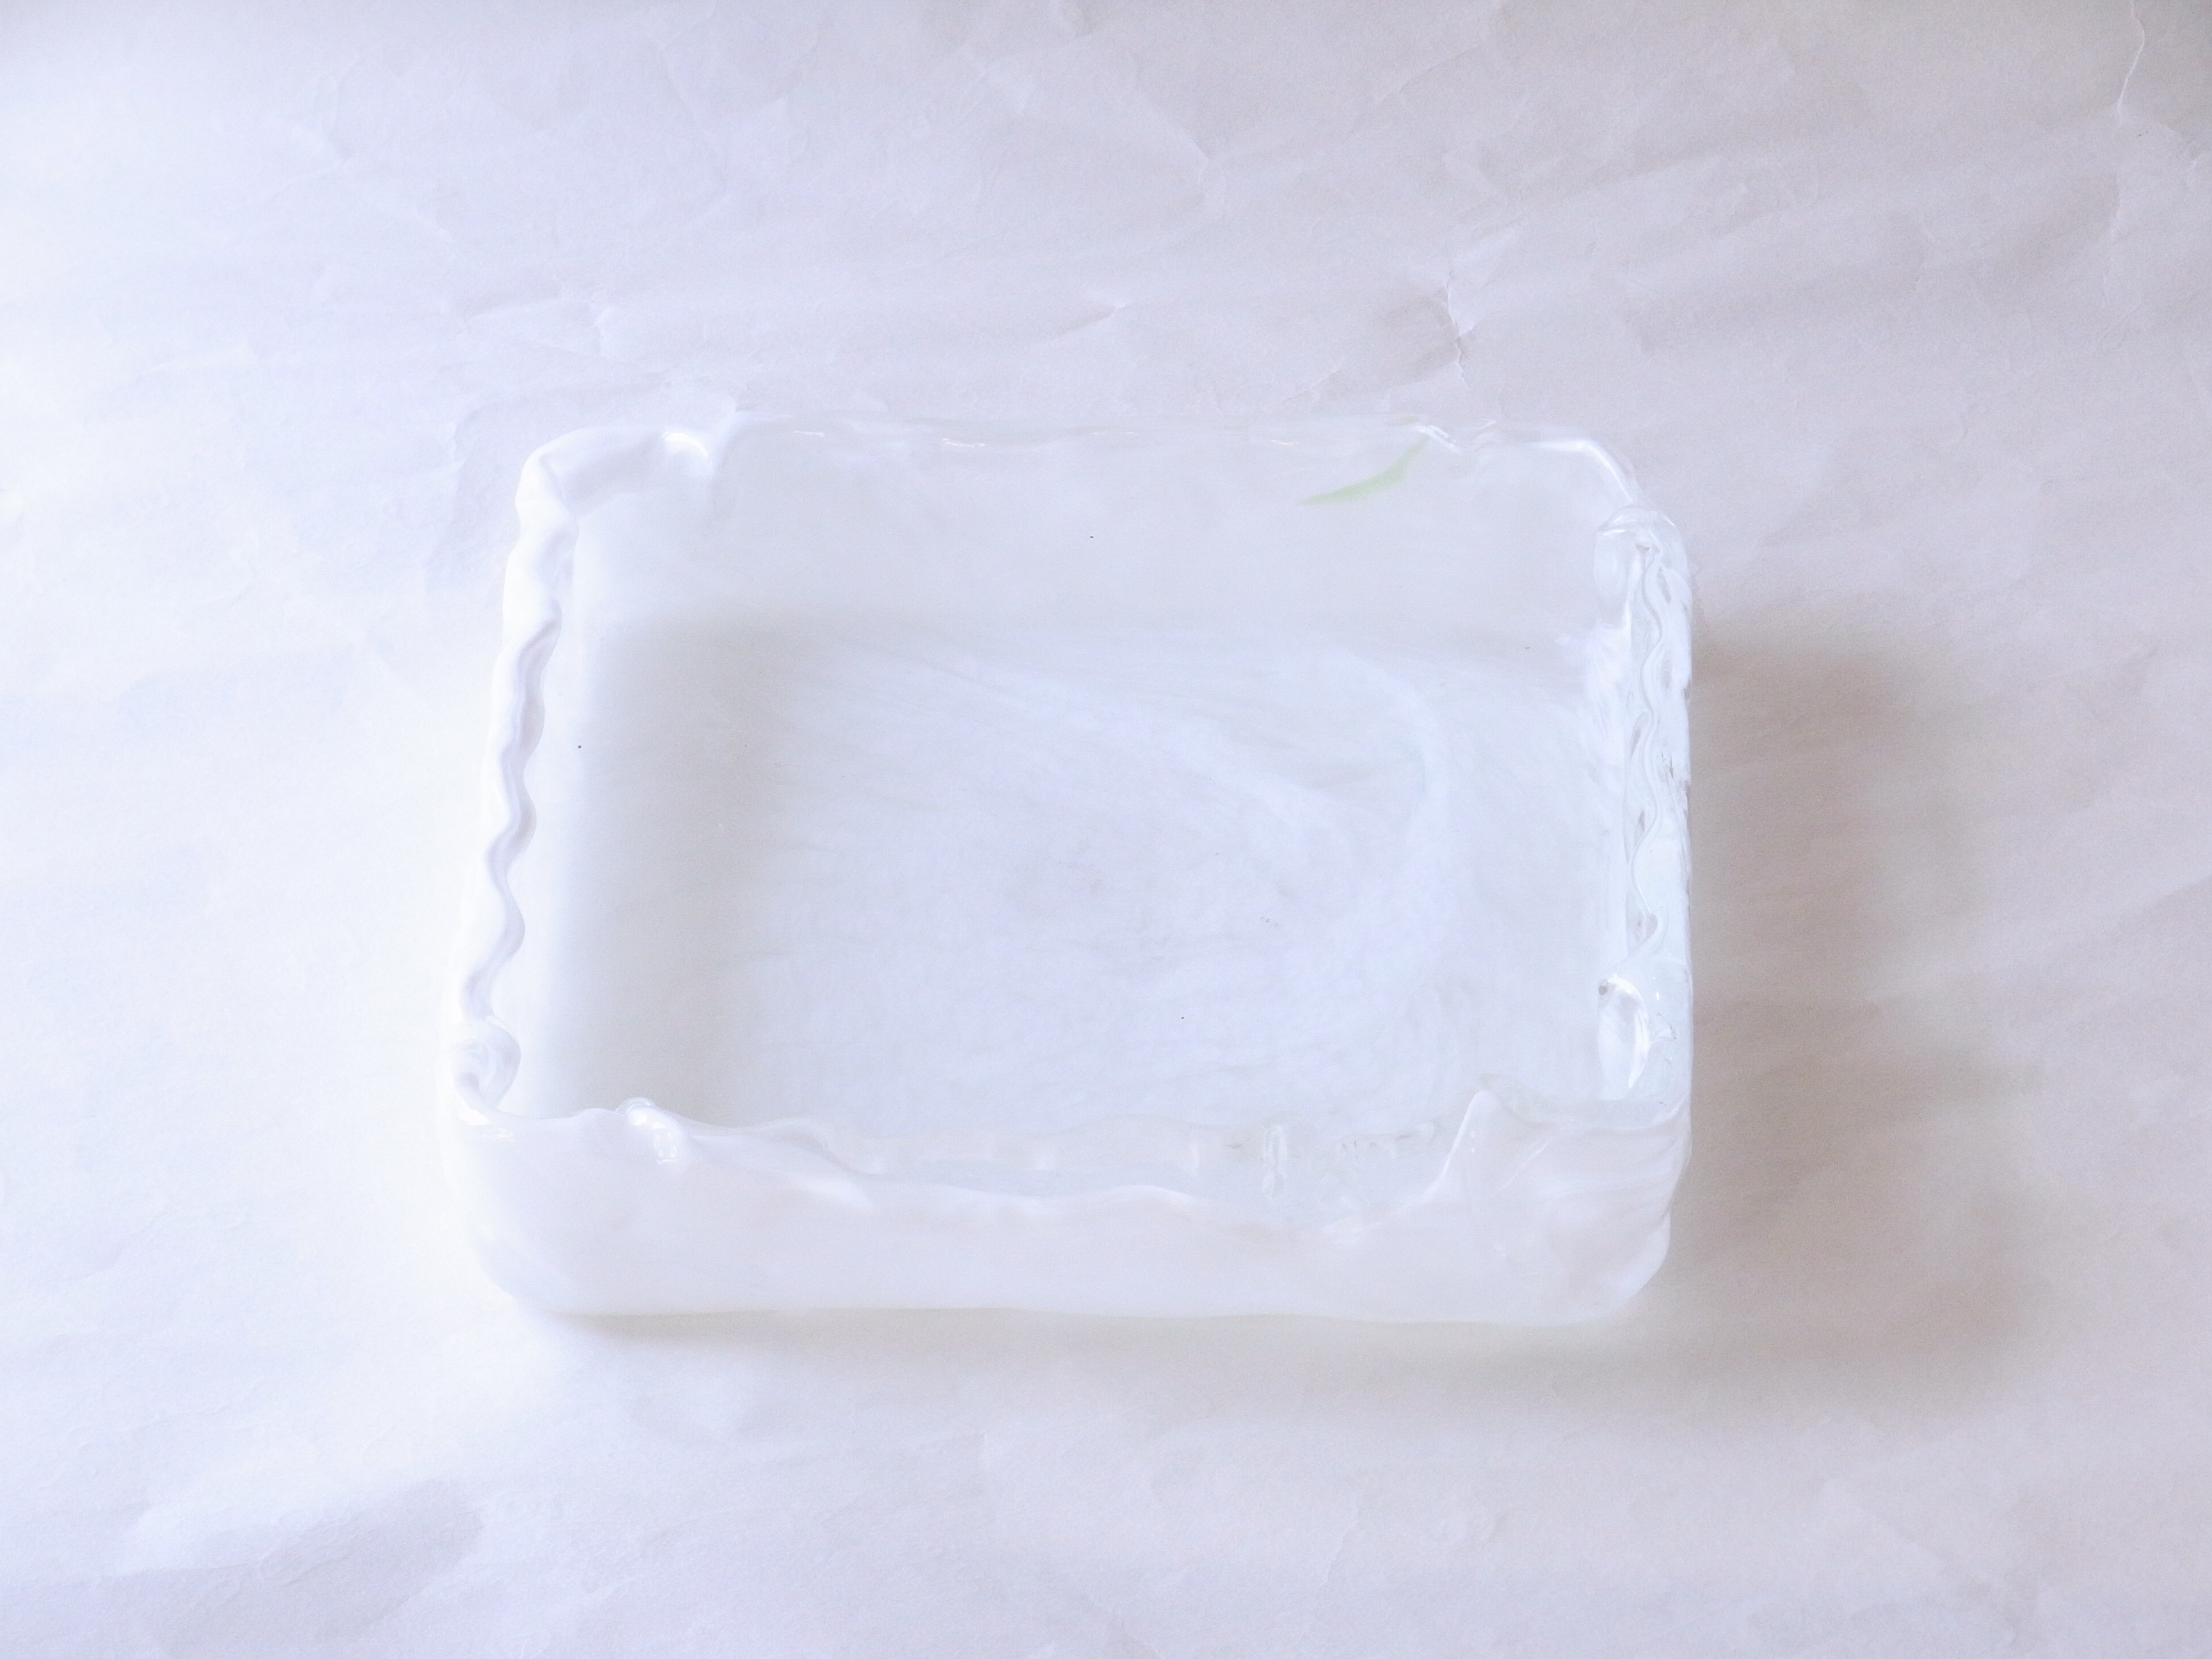 ガラス製品　日本製　手づくり　ガラス花器　スクエア　白　熱いうちに　曲げて成形　四角い　水盤のような　基本的な生け方　透明なガラス　白色が流れるように　漂っている風合い　透明な部分　白い筋状　斑紋　細かい　意図的でない　自然なガラスの流れ　花器のデザイン　模様　高度な技術　デコボコ　手づくり感　白が基調　どんな花にも合わせやすい　引き立つ　花器の形　最もよく使う　基本のもの　どなたでも生けられる　汎用性が高い　日本製　陶器　磁器　陶磁器　漆器　茶道具　華道具　贈り物　ギフト　記念品　引出物　法要　お返し　専門店　リアル店舗　茶の湯　茶道　裏千家　表千家　茶会　月釜　抹茶　高品質　安らぎ　いやし　よりおいしく　安心　機能的　長持ち　人気　おすすめ　高機能　ネット通販　ネットショップ　セレクトショップ　欲しい　購入　買う　買い物　岐阜県　岐阜市　美殿町　小林漆陶　特別な　選び抜かれた　品質重視　使いやすい　格安　老舗　誕生日　結婚　出産　入学　退職　母の日　父の日　敬老の日　クリスマス　プレゼント　叙勲　長寿　新築　お祝い　御礼　内祝い　外国土産　海外みやげ　実店舗　創業１００年以上　使うと分かる　職人技 日本一の品揃え　日本一の在庫数　専門店　専門知識　数万点の在庫　百貨店（高島屋　三越　伊勢丹　松坂屋　大丸）にない　手作り　お洒落　高級品　希少価値　上質な器 伝統工芸品　コスパ　お値打ち　お買い得　堅牢　飽きない　永く使える　お気に入り　国産　料理が映える　満足感　豊かな食生活　豊かな食文化　こだわりの器　日本文化　他にない　ここにしかない　オリジナル　独自の　個性的　ここでしか買えない　超レアもの　一品もの　現品限り　入手困難　いい器　匠の技　美しい　実用的　外人が喜ぶ店　外人が珍しがる店　外人がうれしい店　日本各地の一級品を売る店　日本全国の器を売る店　本当にいいもの コスパ高い　一流品　修理　選りすぐりの逸品　周年記念　永年勤続表彰　退職記念　卒業記念　日本土産　岐阜土産　岐阜のおみやげ　岐阜の特産品　料理を引き立てる器　高級店　一流店　岐阜で一番　東海で一番　中部で一番　日本で一番　おしゃれな店　地域一番店　実店舗　陶磁器　磁器　華道具　ガラス器　明治４２年創業　有田焼　清水焼　美濃焼　赤津焼　万古焼　常滑焼　九谷焼　唐津焼　萩焼　信楽焼　万古焼　砥部焼　備前焼　丹波焼　山中塗　春慶塗　讃岐塗　越前塗　輪島塗　紀州塗　会津塗　小田原木工　桜皮細工　秋田杉　駿河竹細工　七宝焼　南部鉄器　錫製品　江戸切子　津軽びいどろ